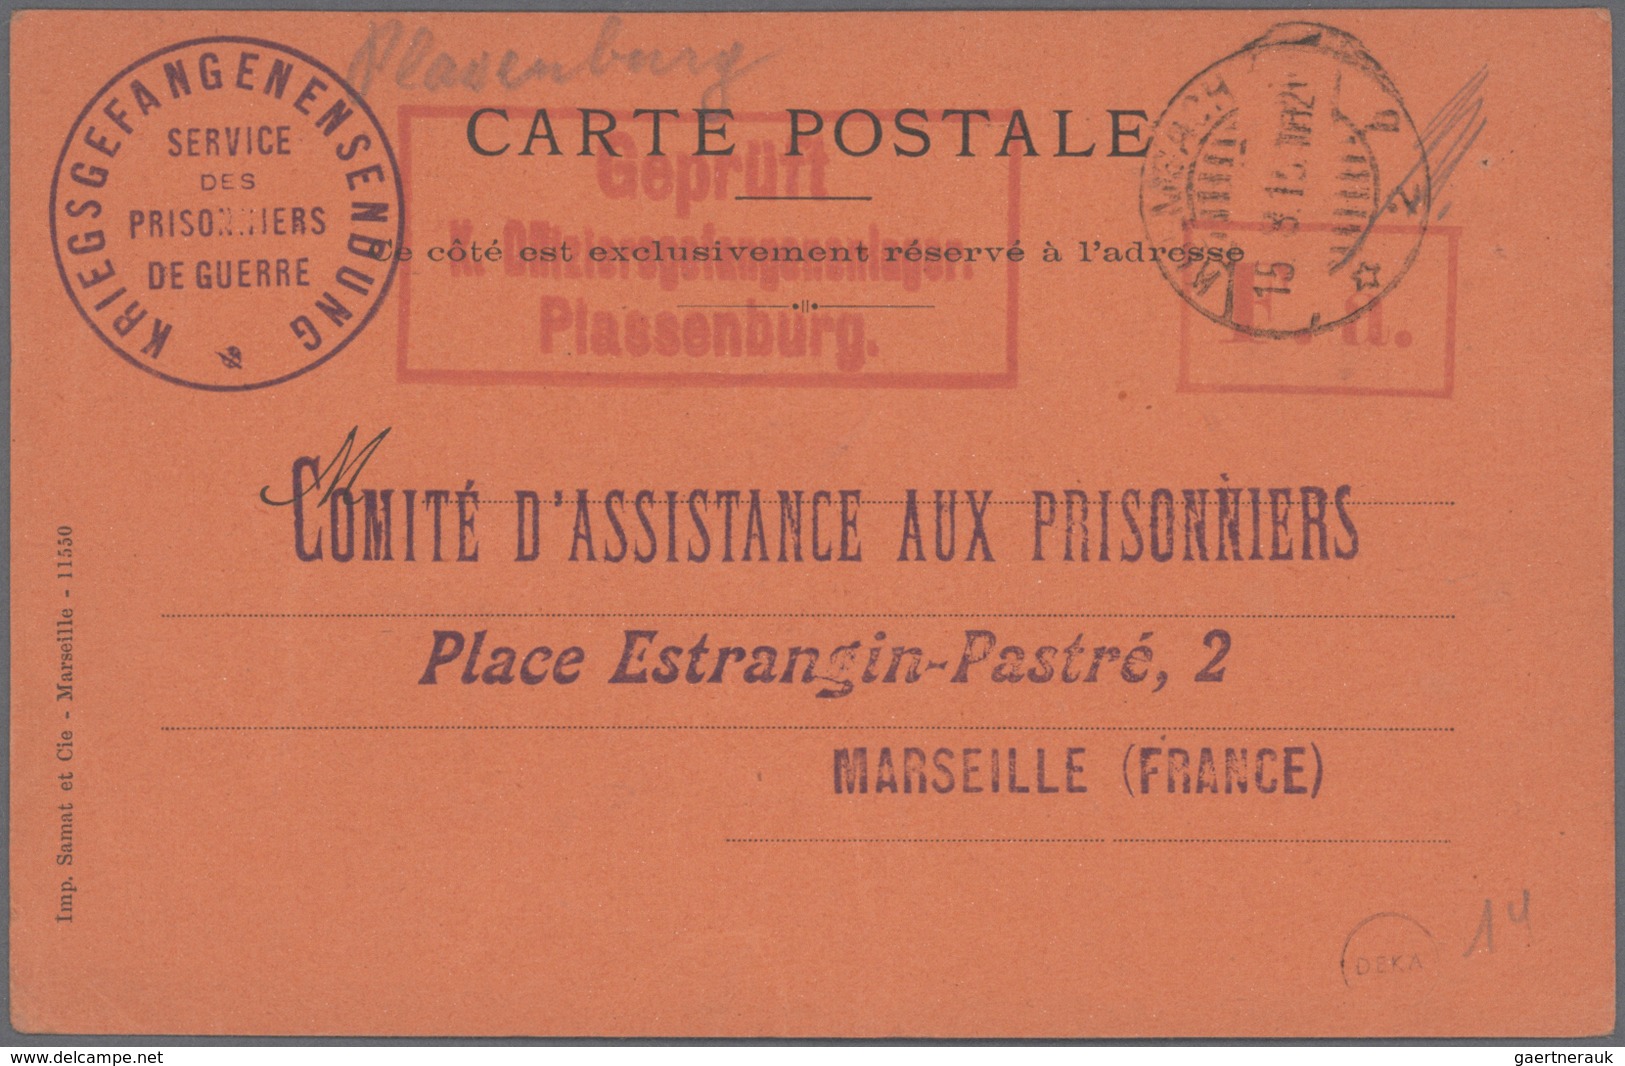 Kriegsgefangenen-Lagerpost: 1914/1918, einige hundert Briefe und Karten im alten, selbstgefertigtem